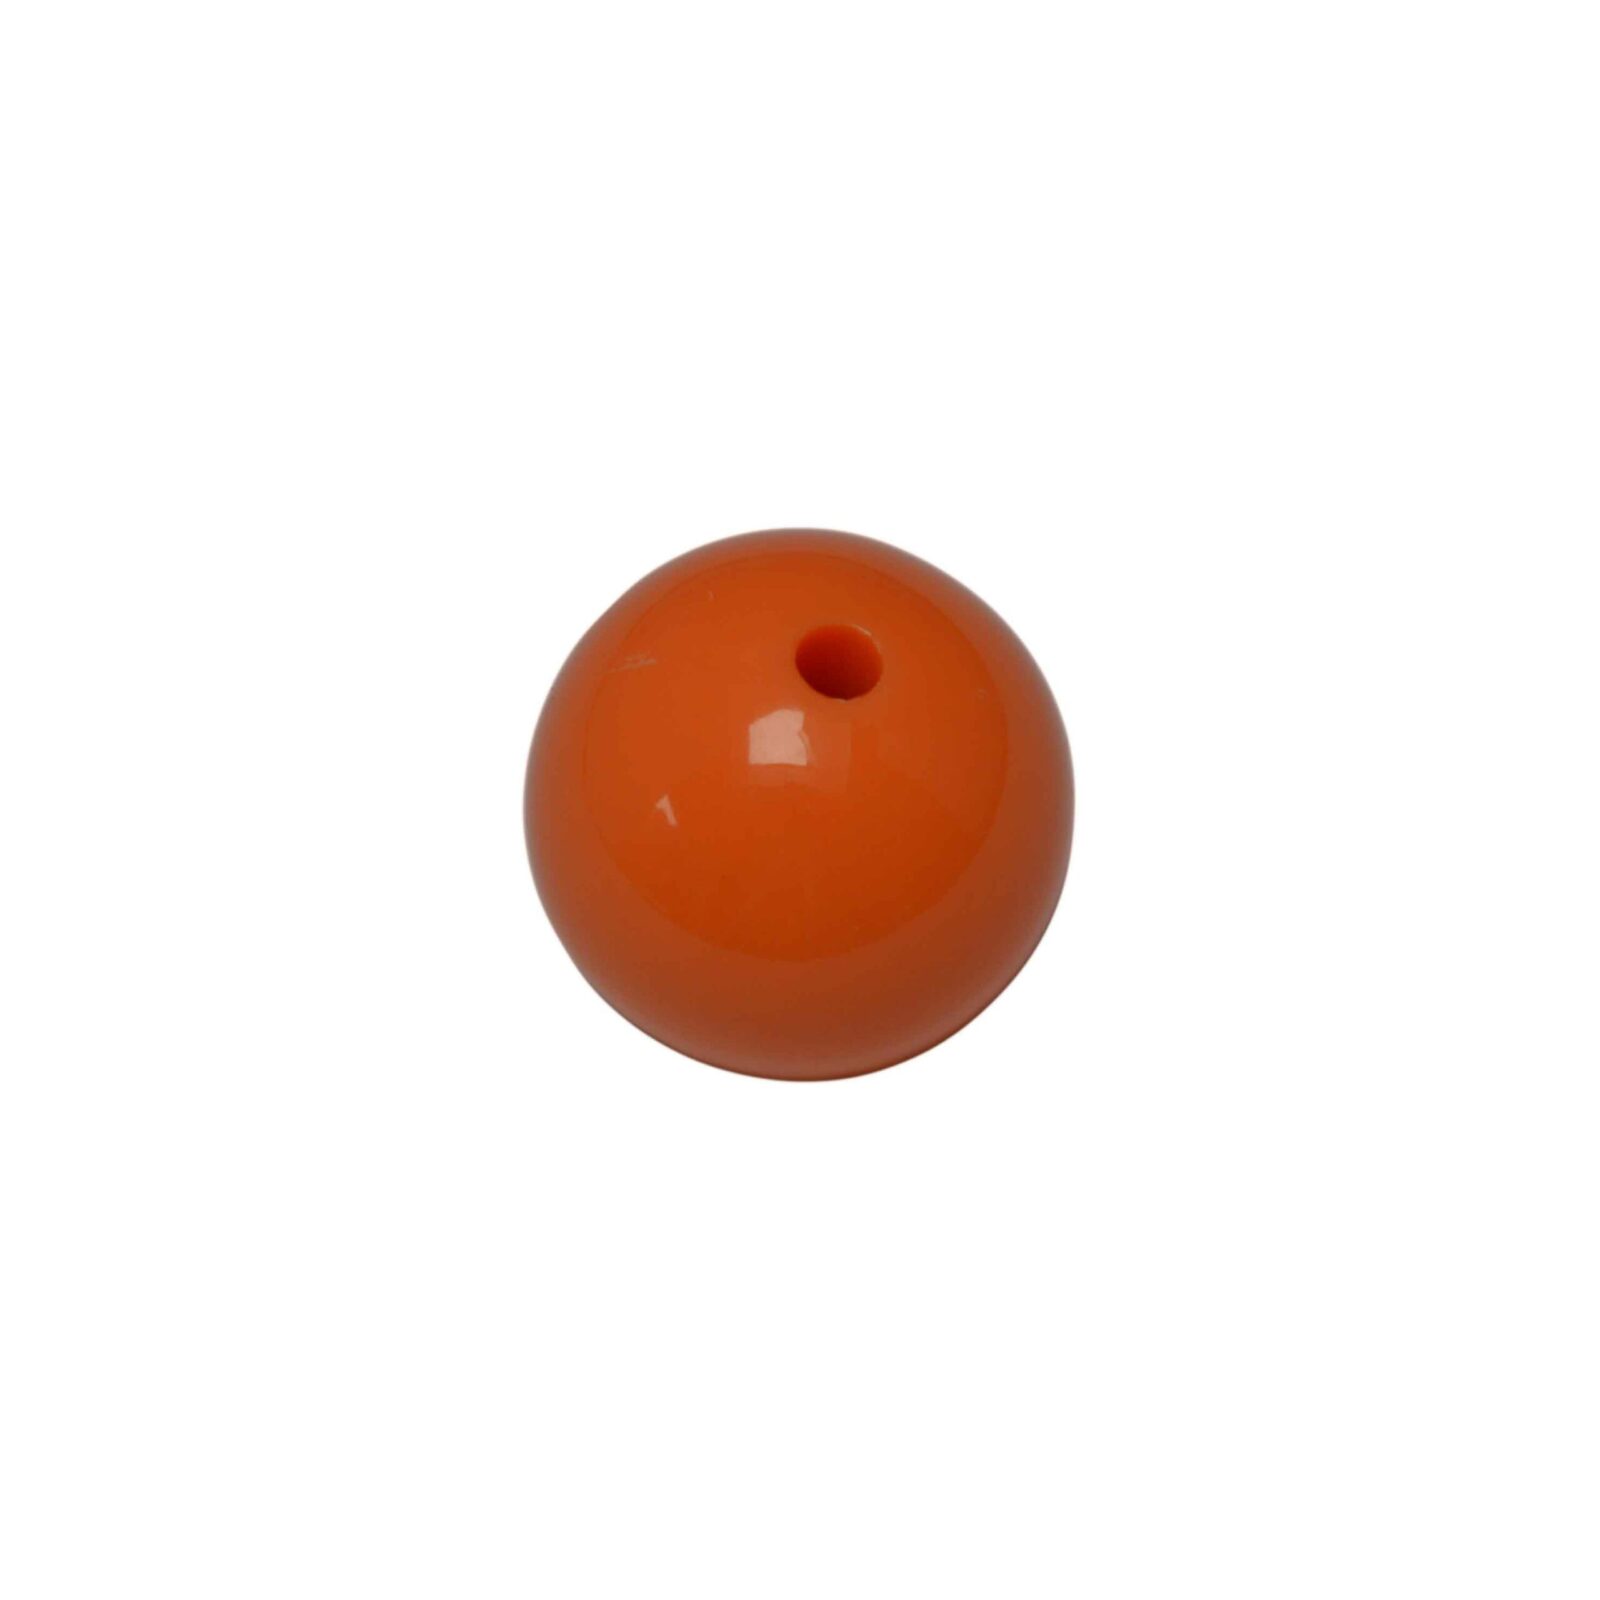 Oranje ronde acryl kraal